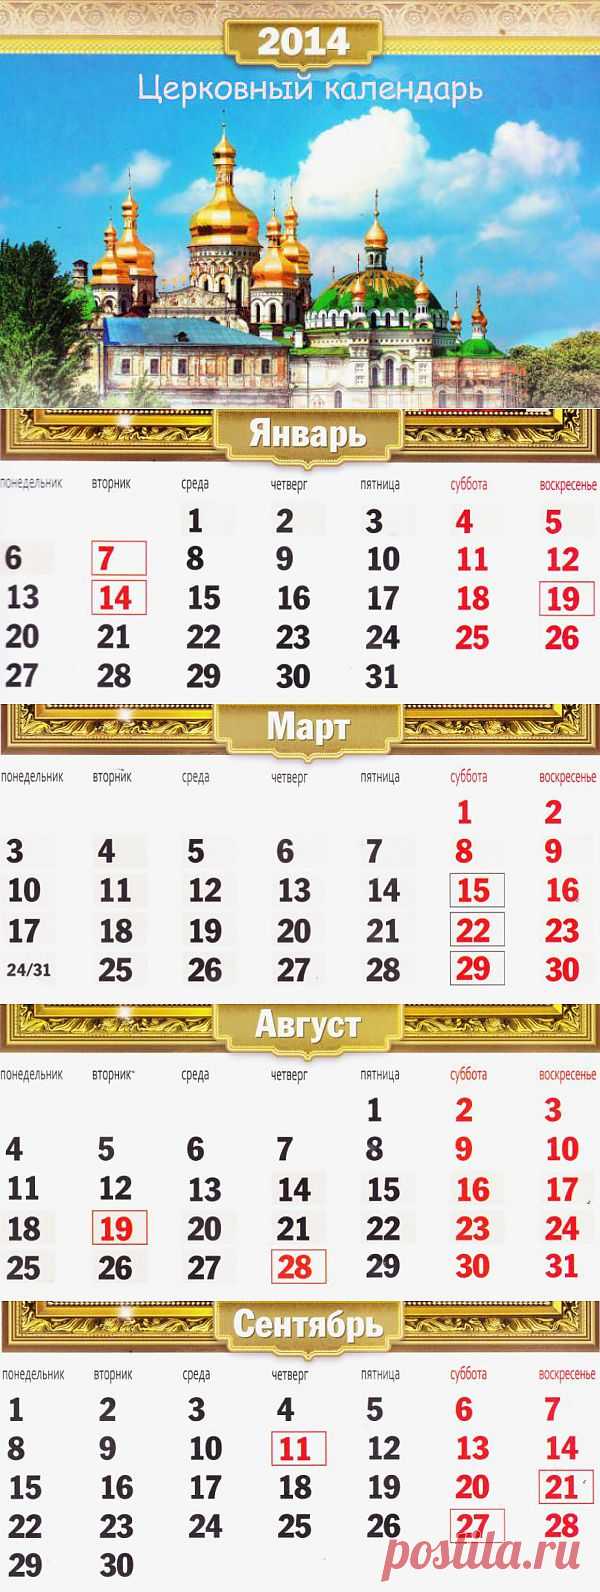 Календарь Церковных Православных праздников на 2014 год